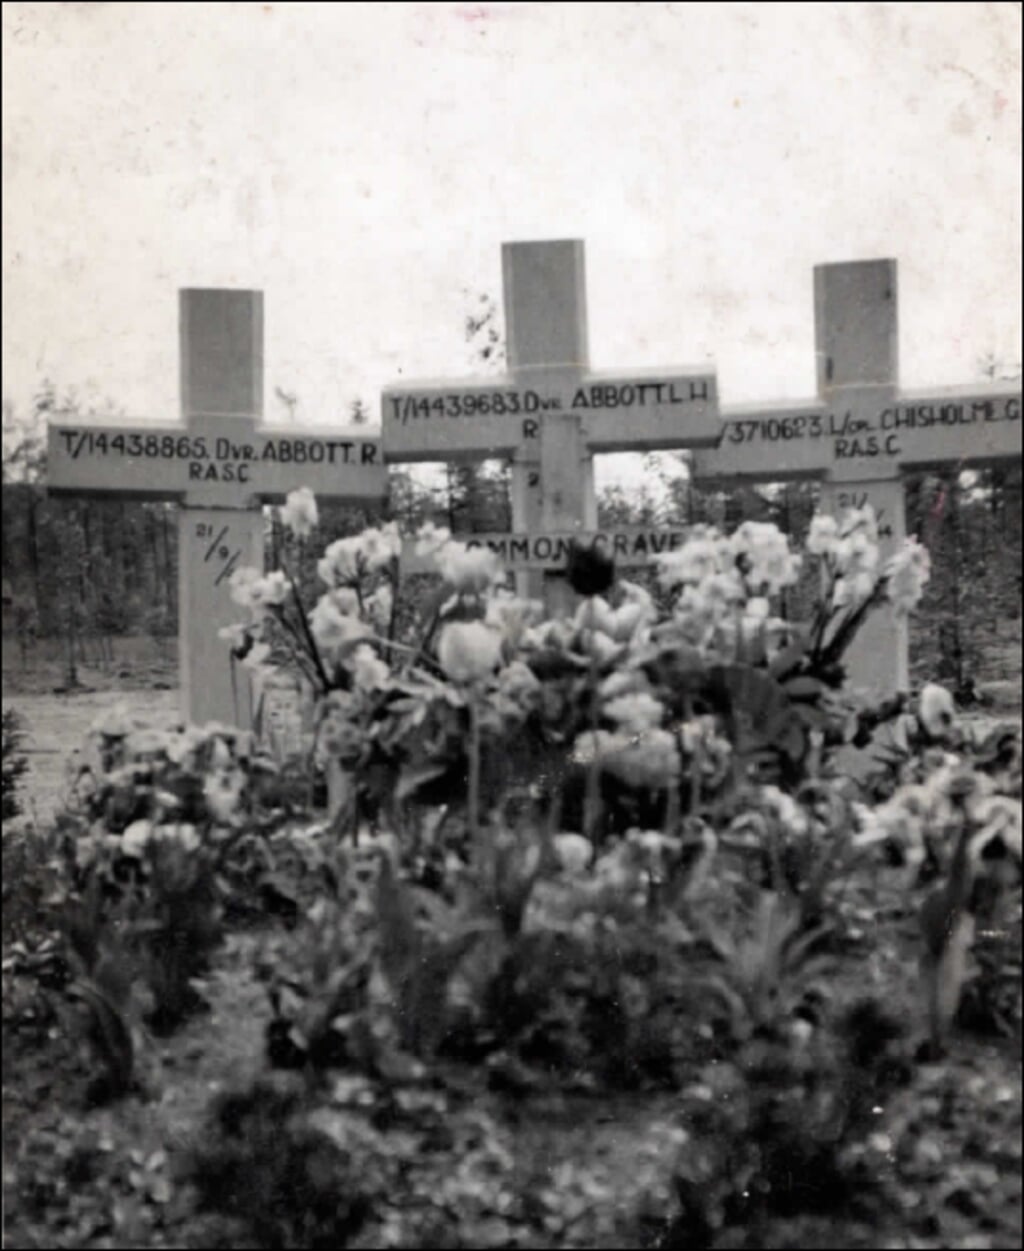 De eerste graven van Roy Abbott, Lionel Abbott en George Chisholme op de Overloon War Cemetery (1947).